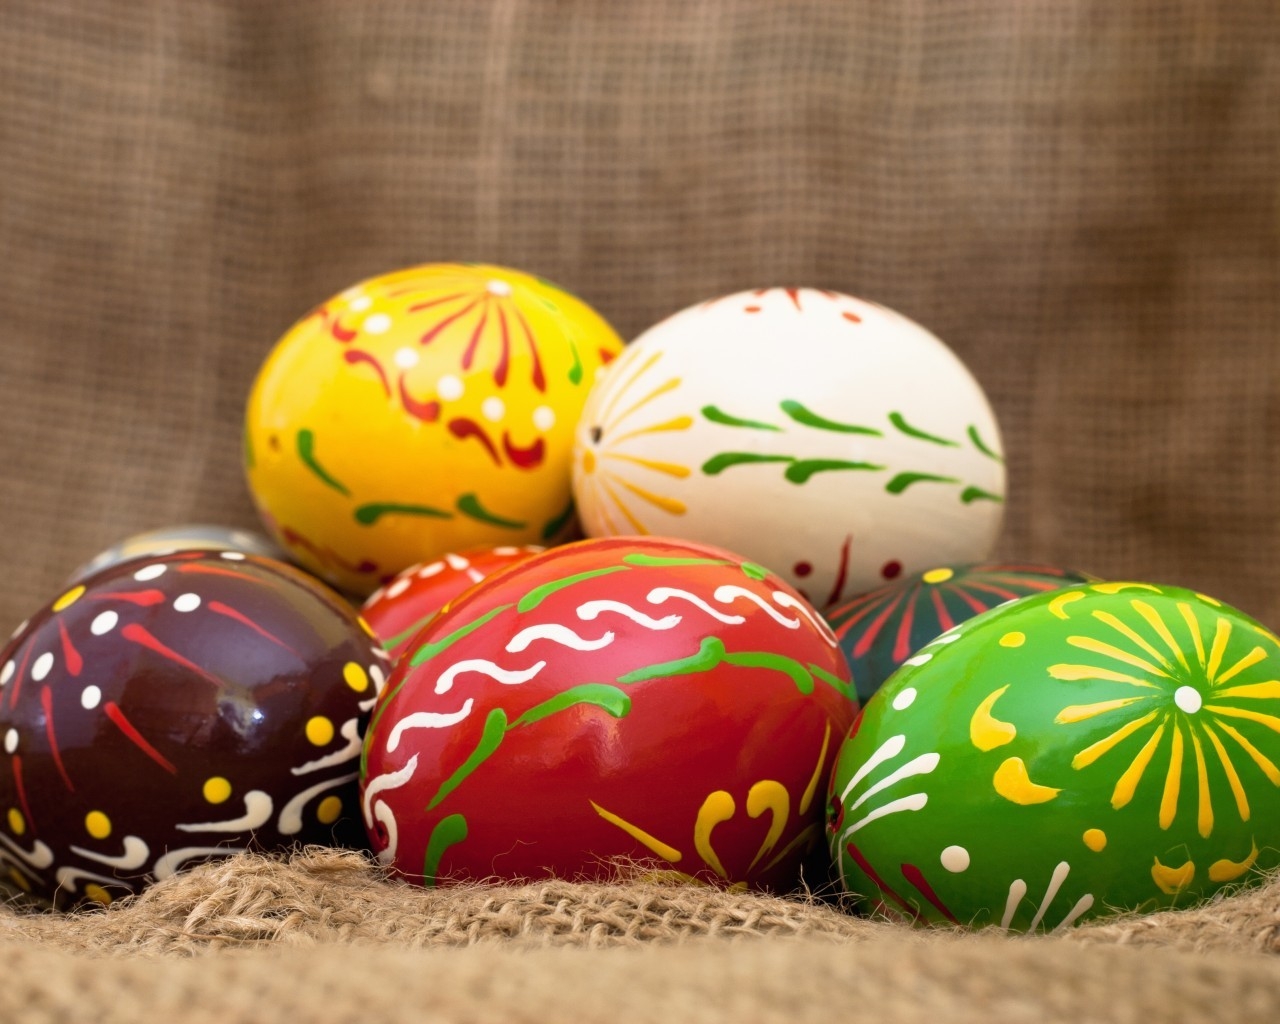 Handmade Easter Eggs for 1280 x 1024 resolution